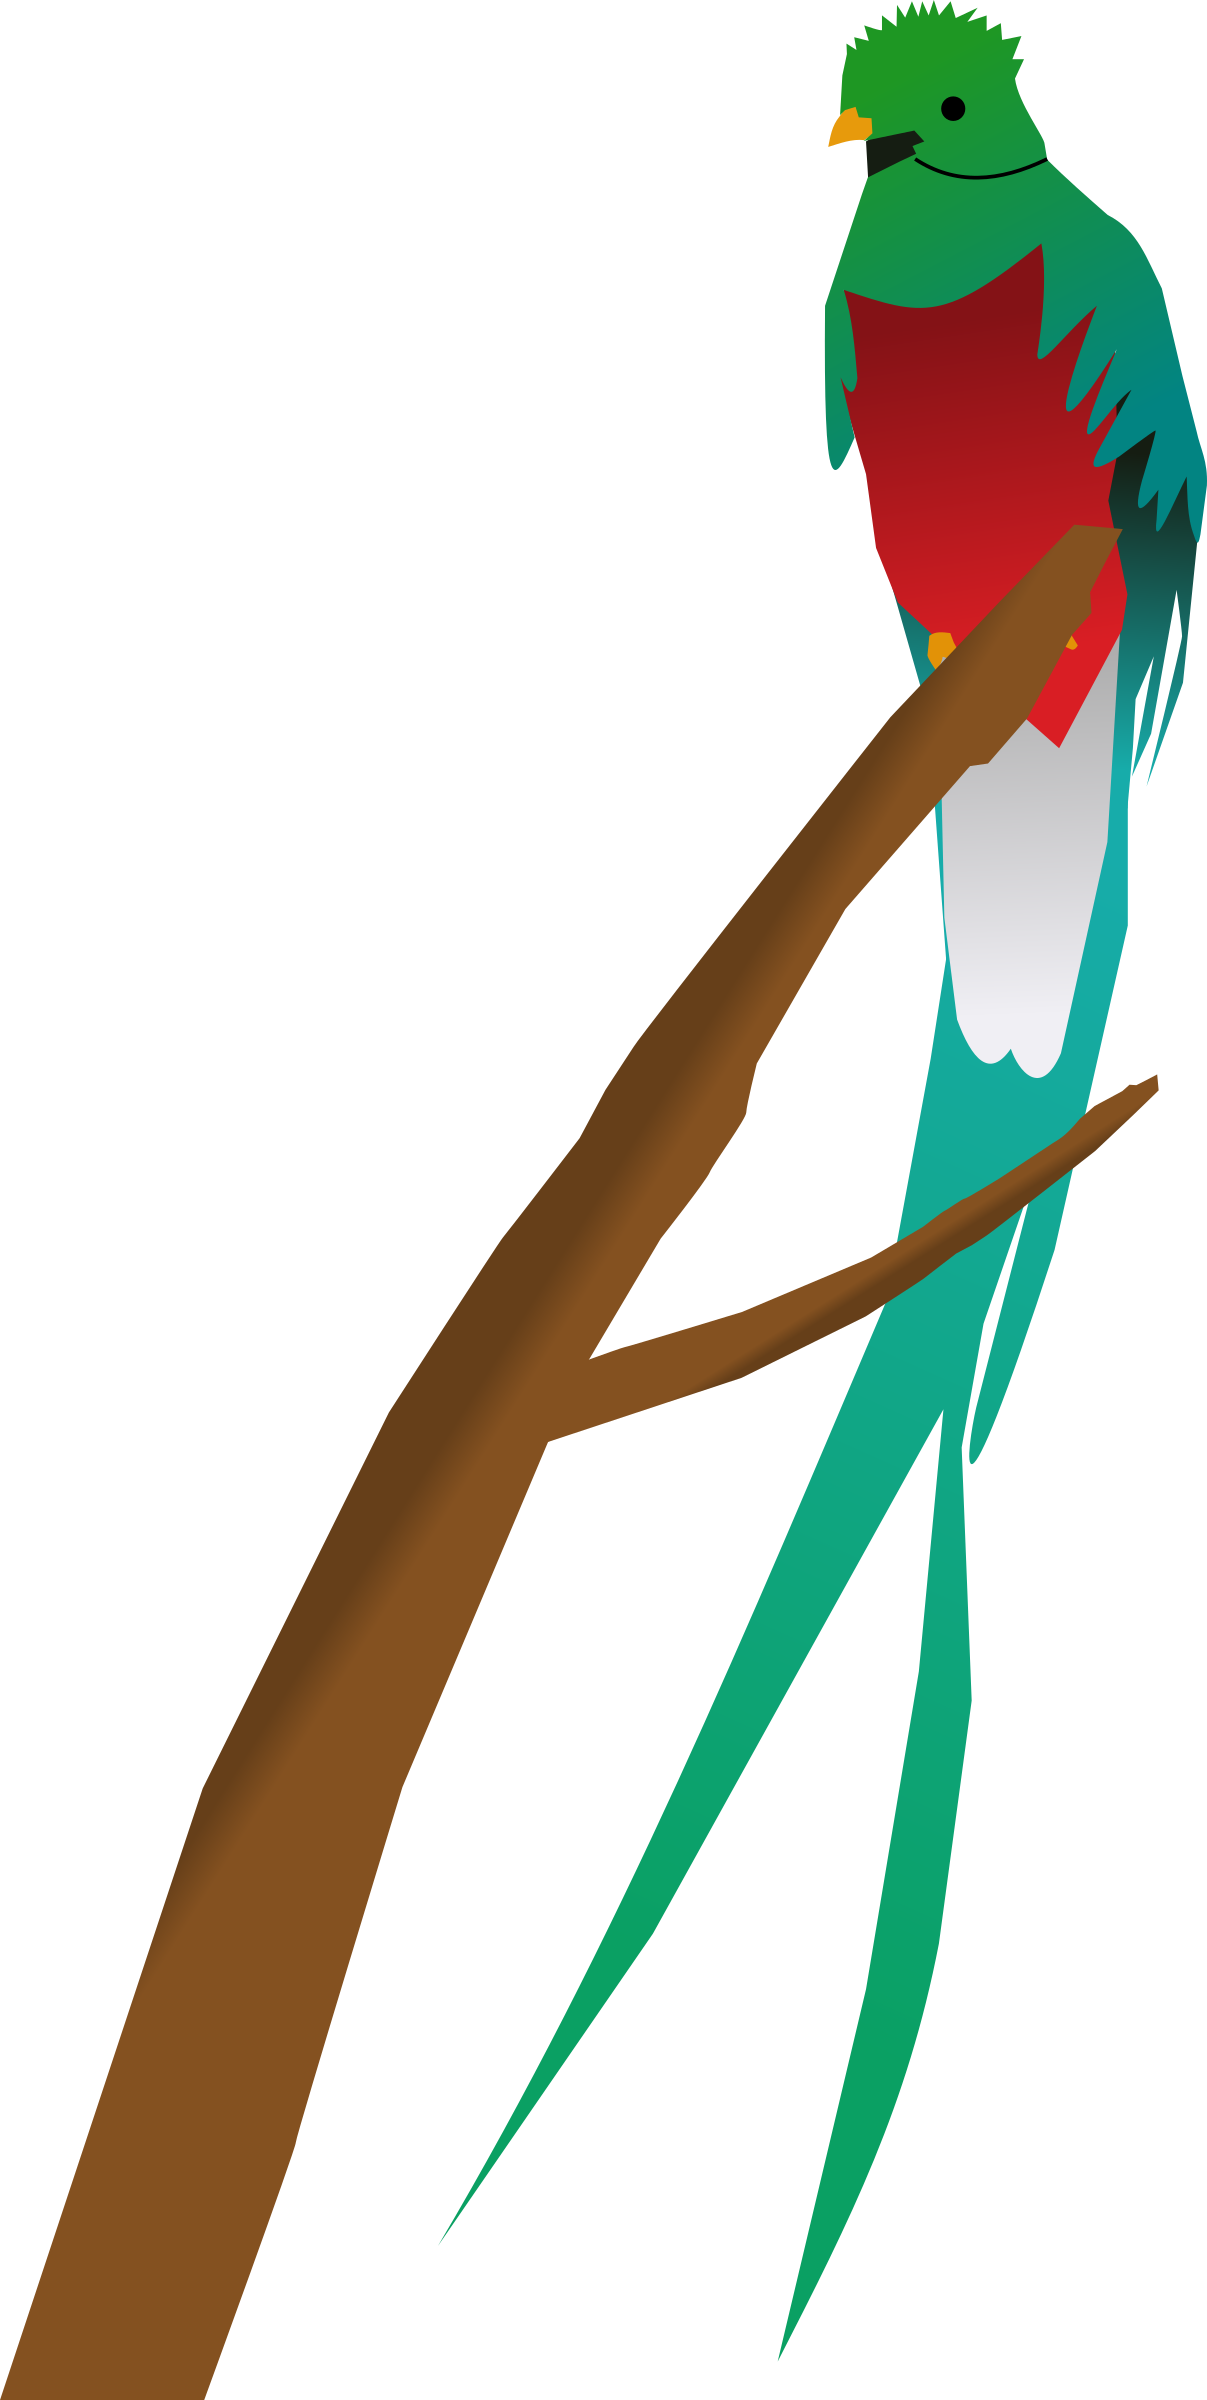 parrot clipart quetzal bird